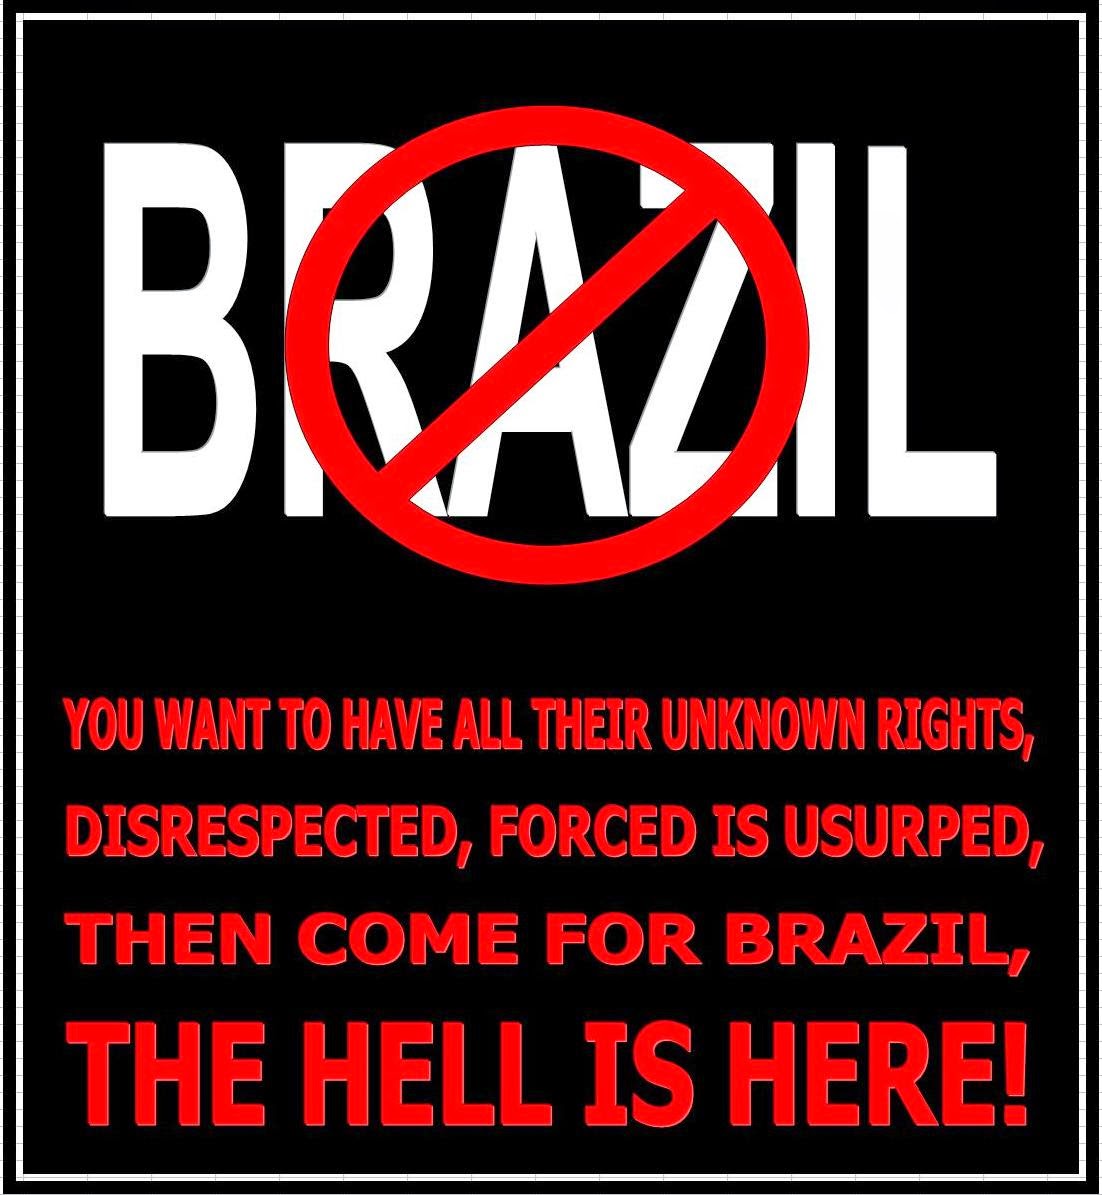 BRAZIL, O INFERNO É AQUI!